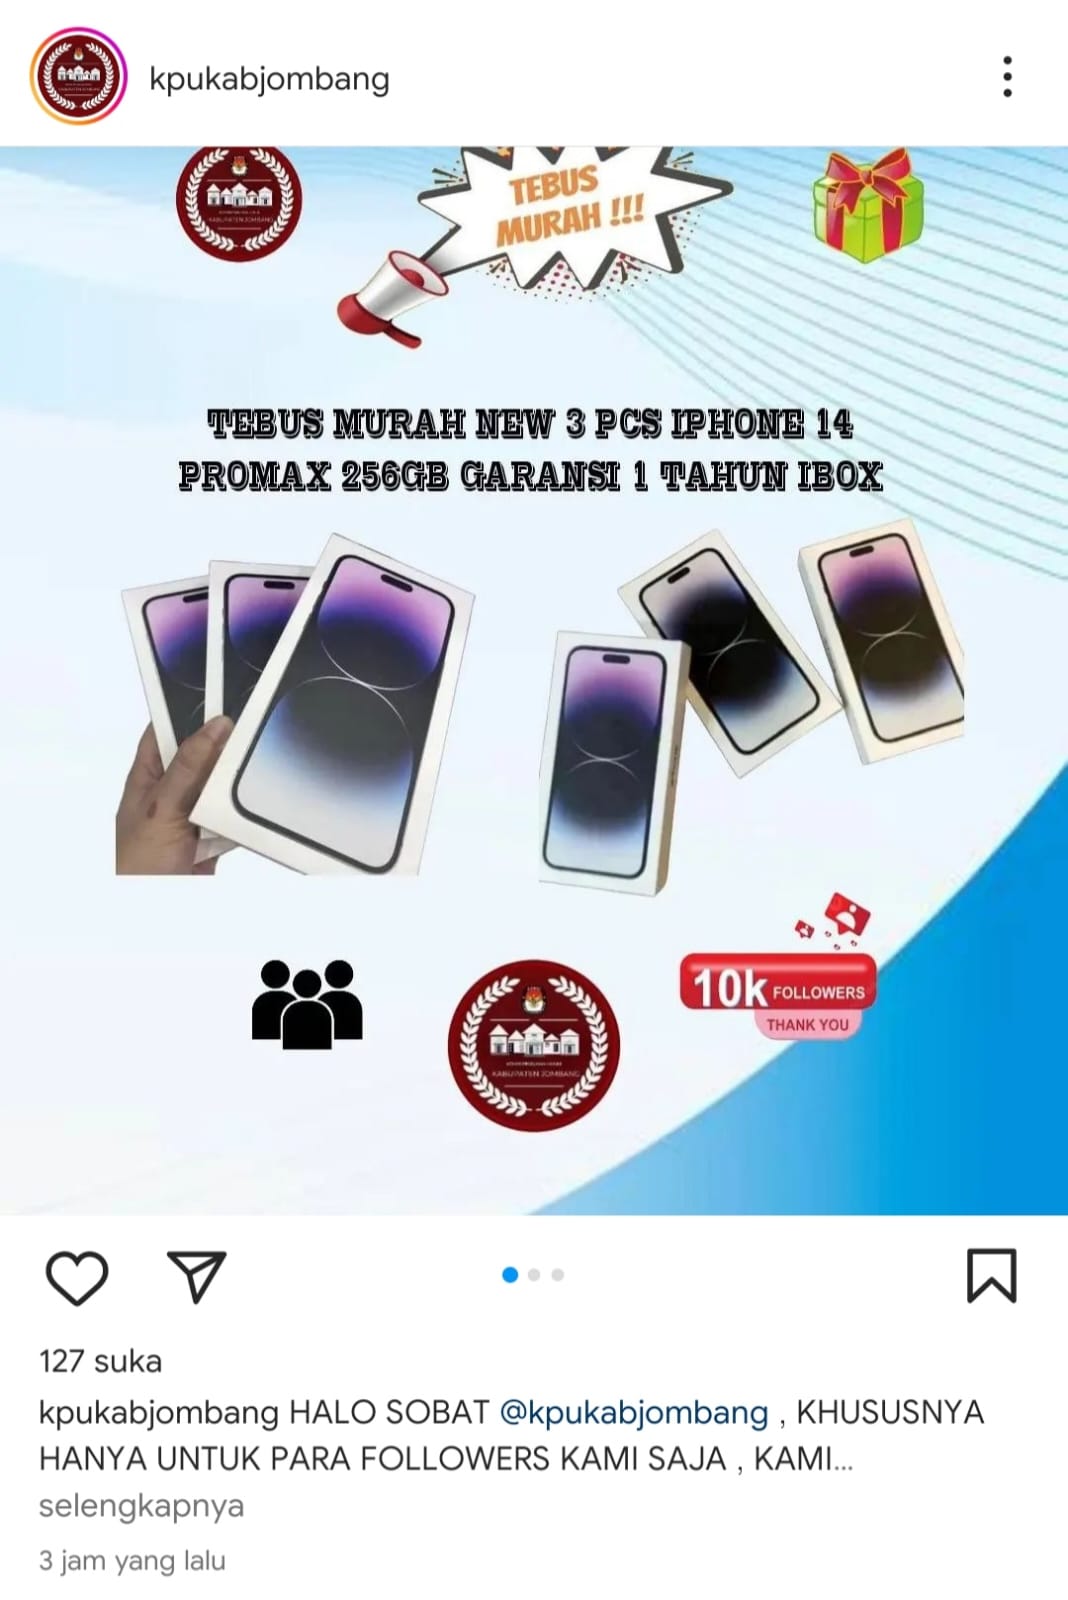 Instagram KPU Jombang Diretas, Obral iPhone Murah